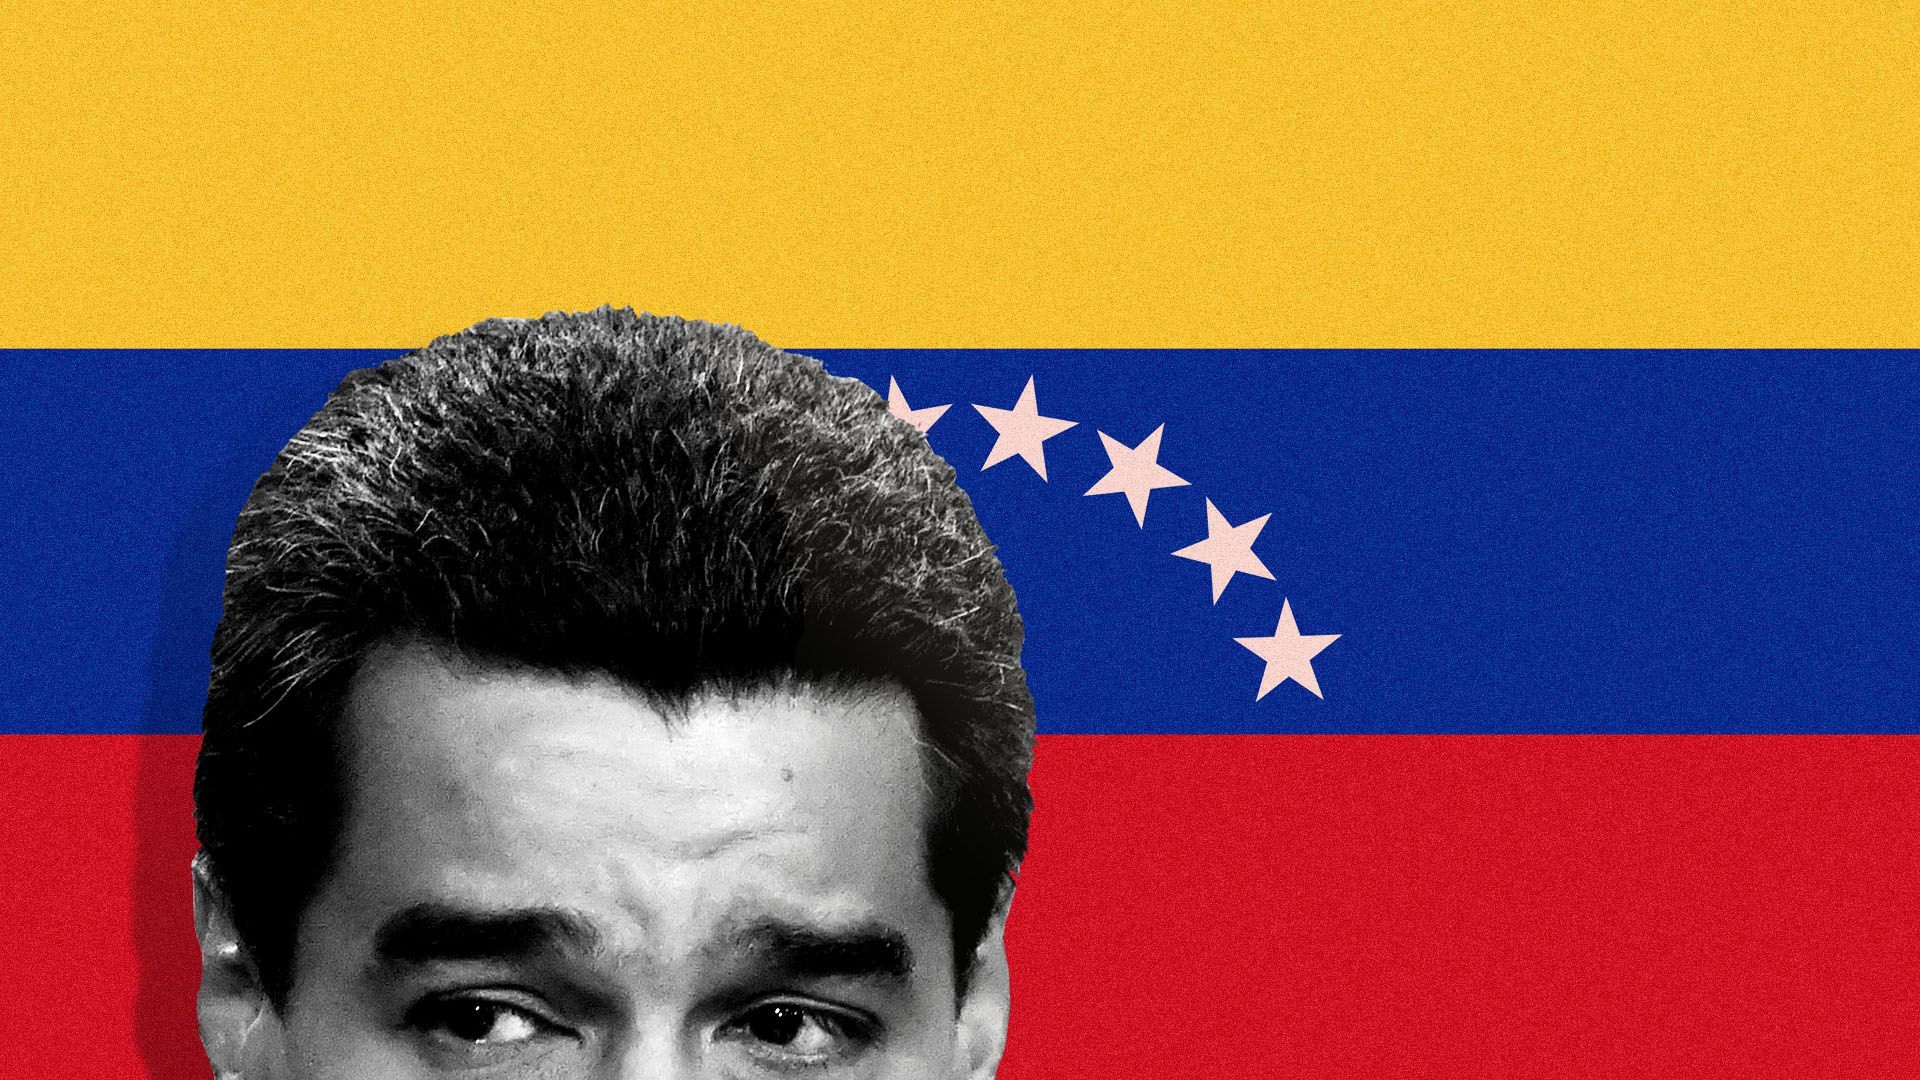 Venezuelan president in front of flag